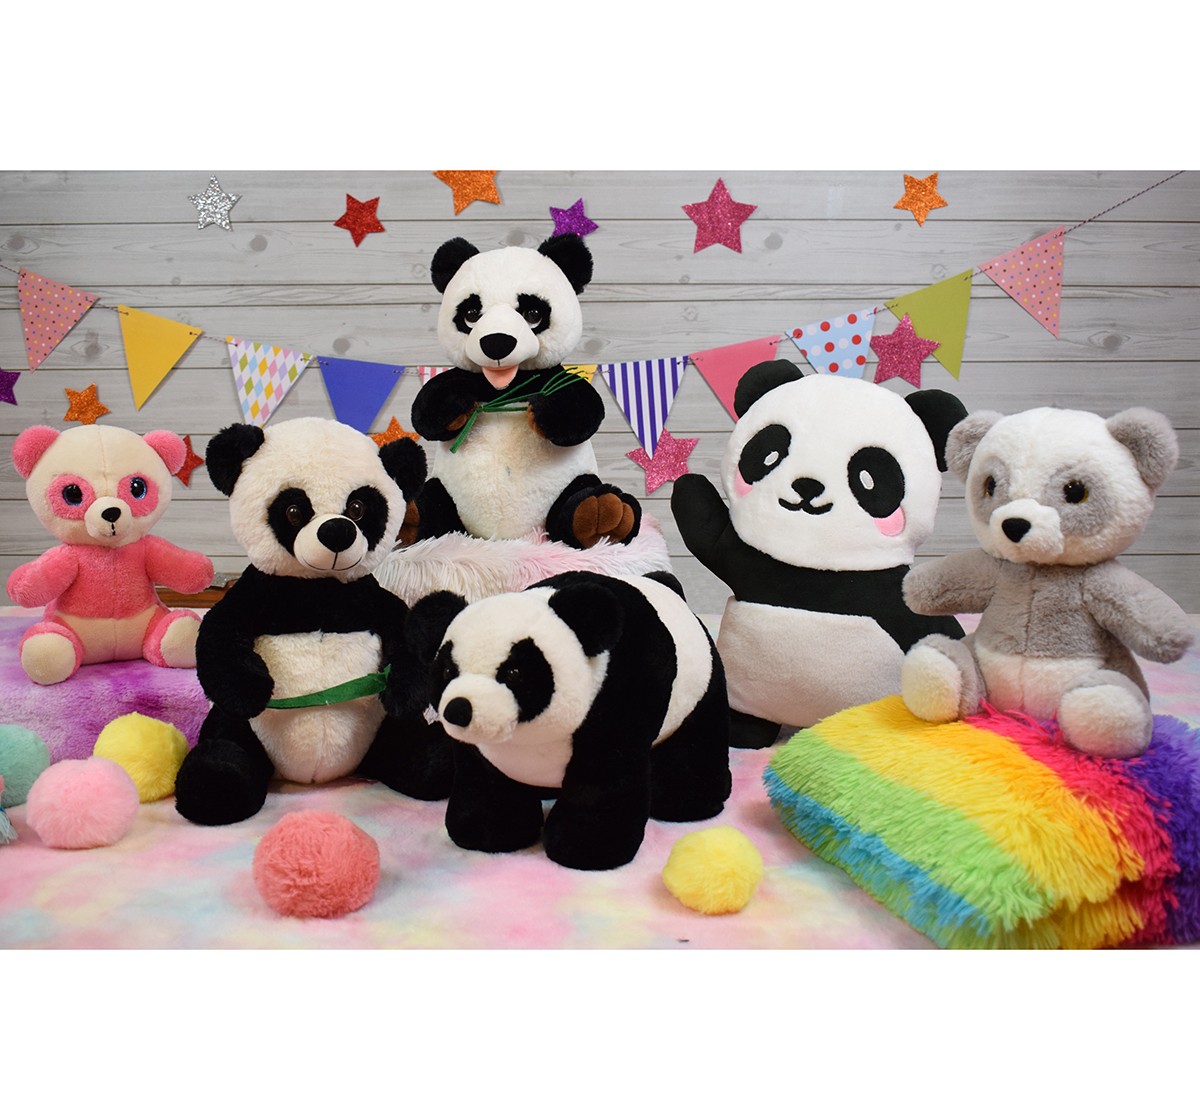 Mirada 40cm standing panda Multicolor 3Y+